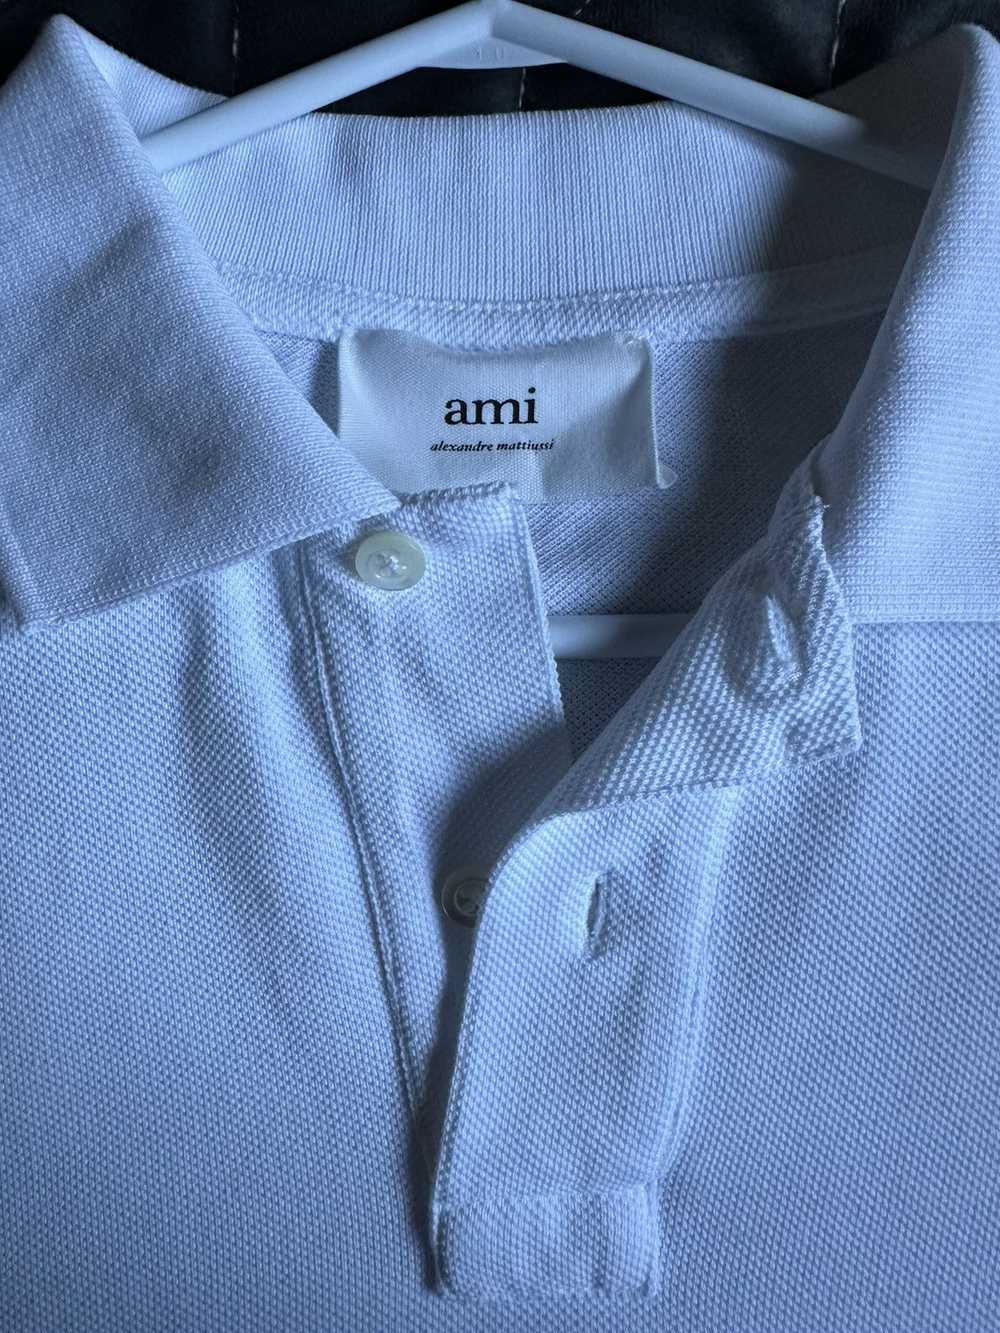 AMI Ami Paris White Polo - image 5